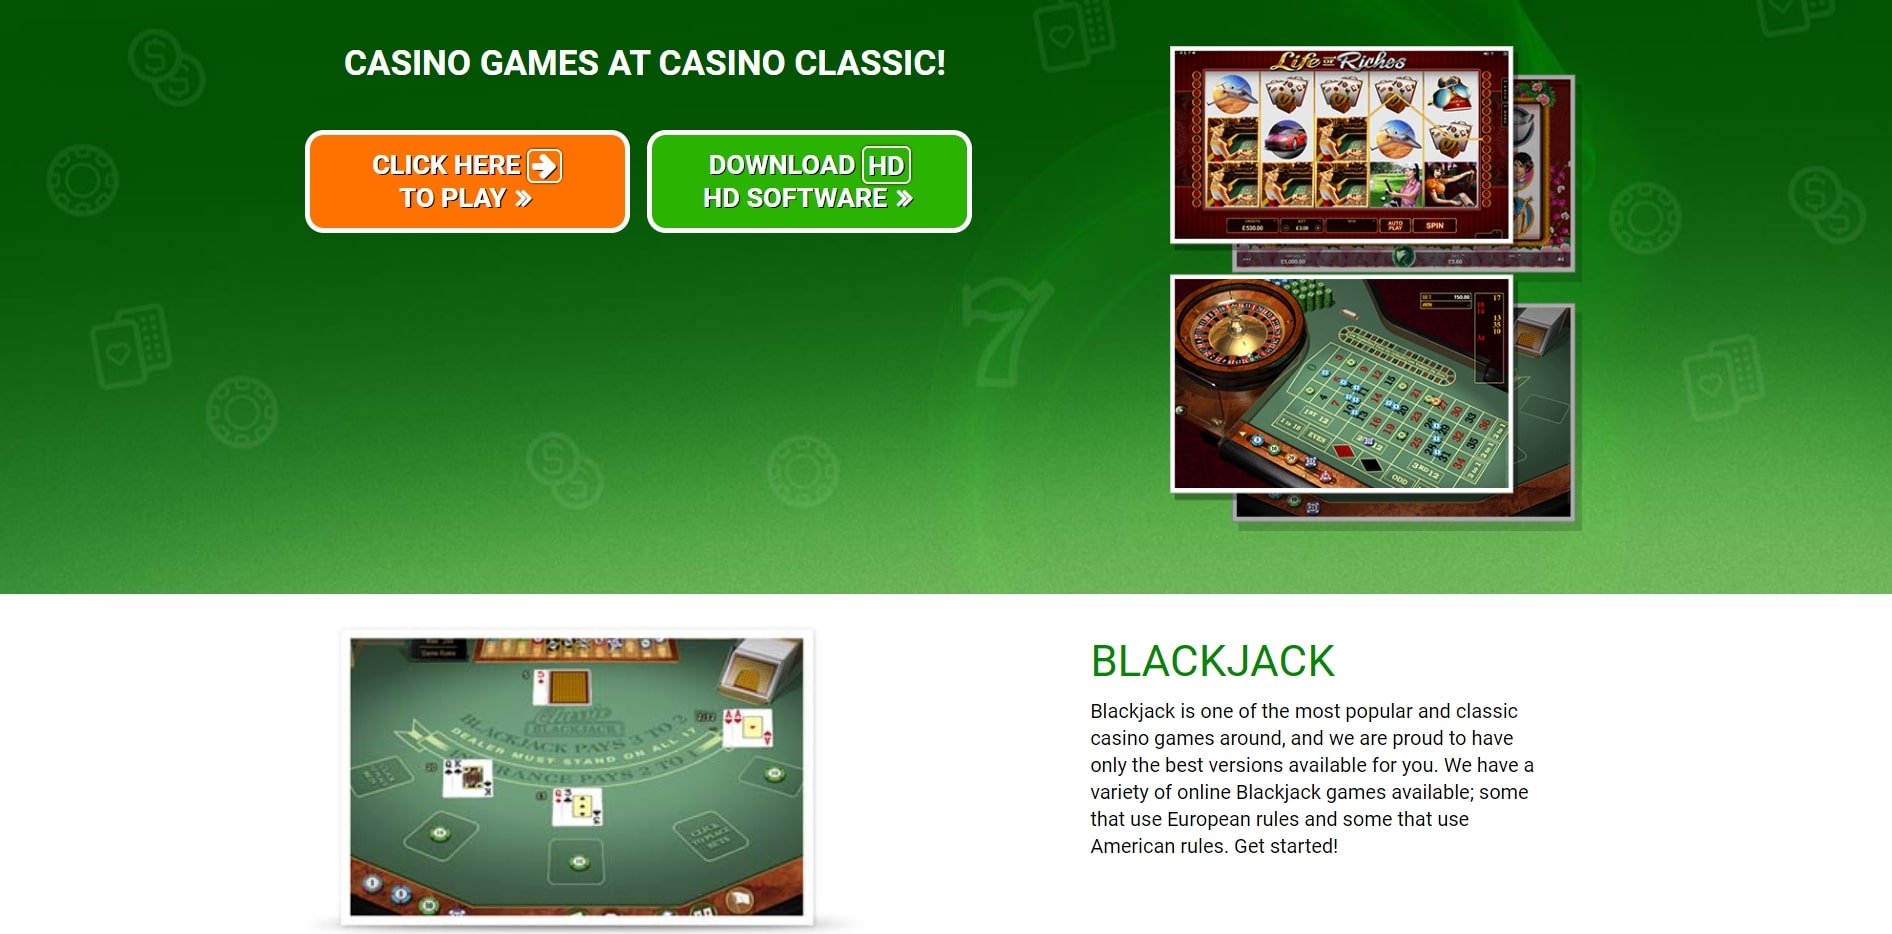 Casino Classic EU Games